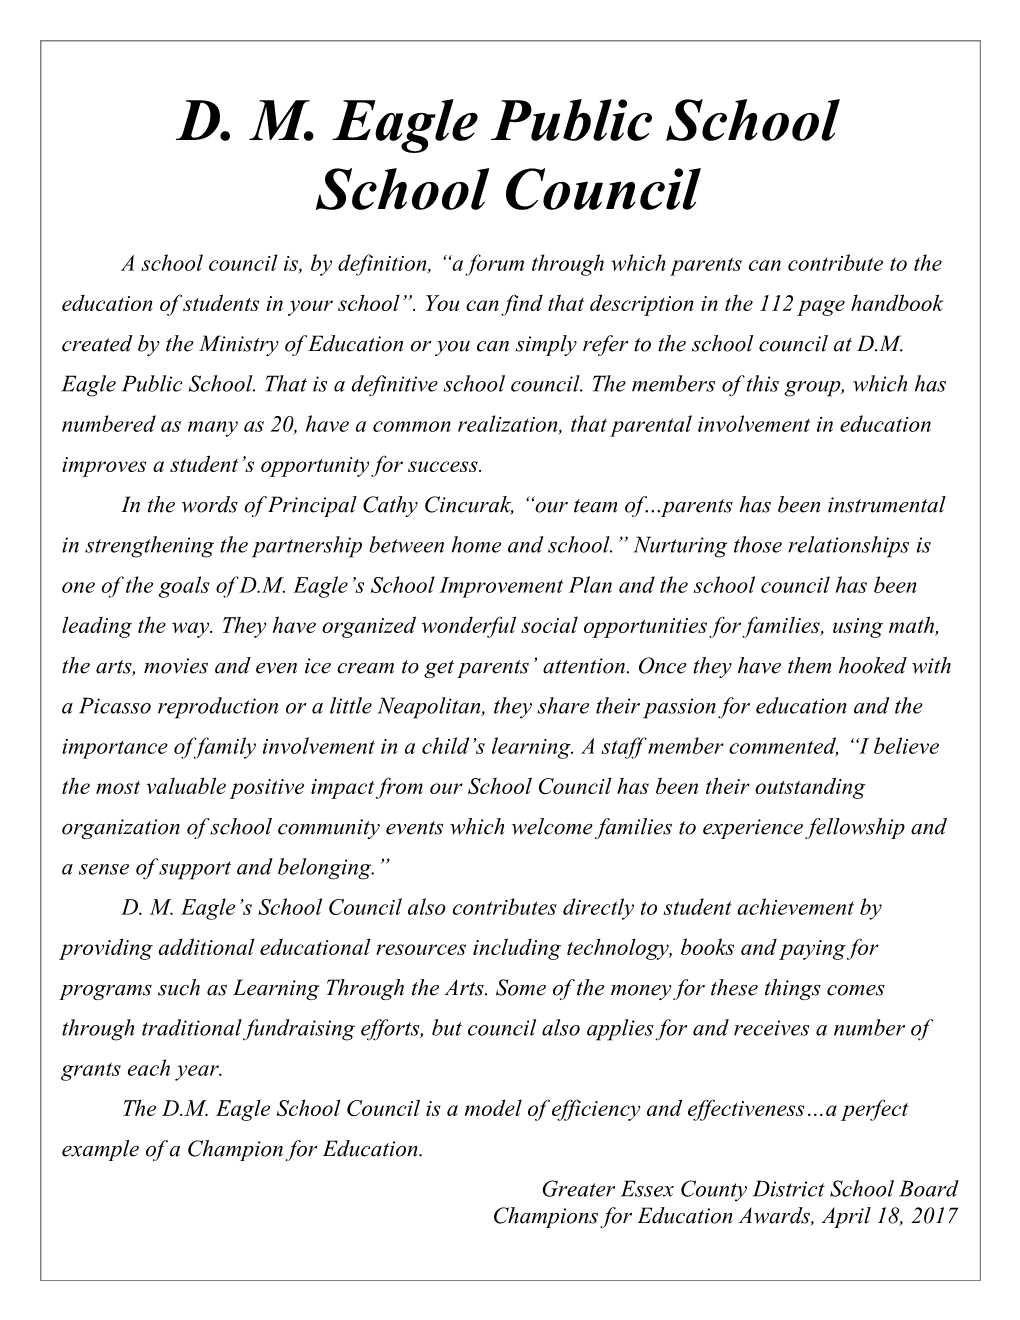 D.M. Eagle School Council